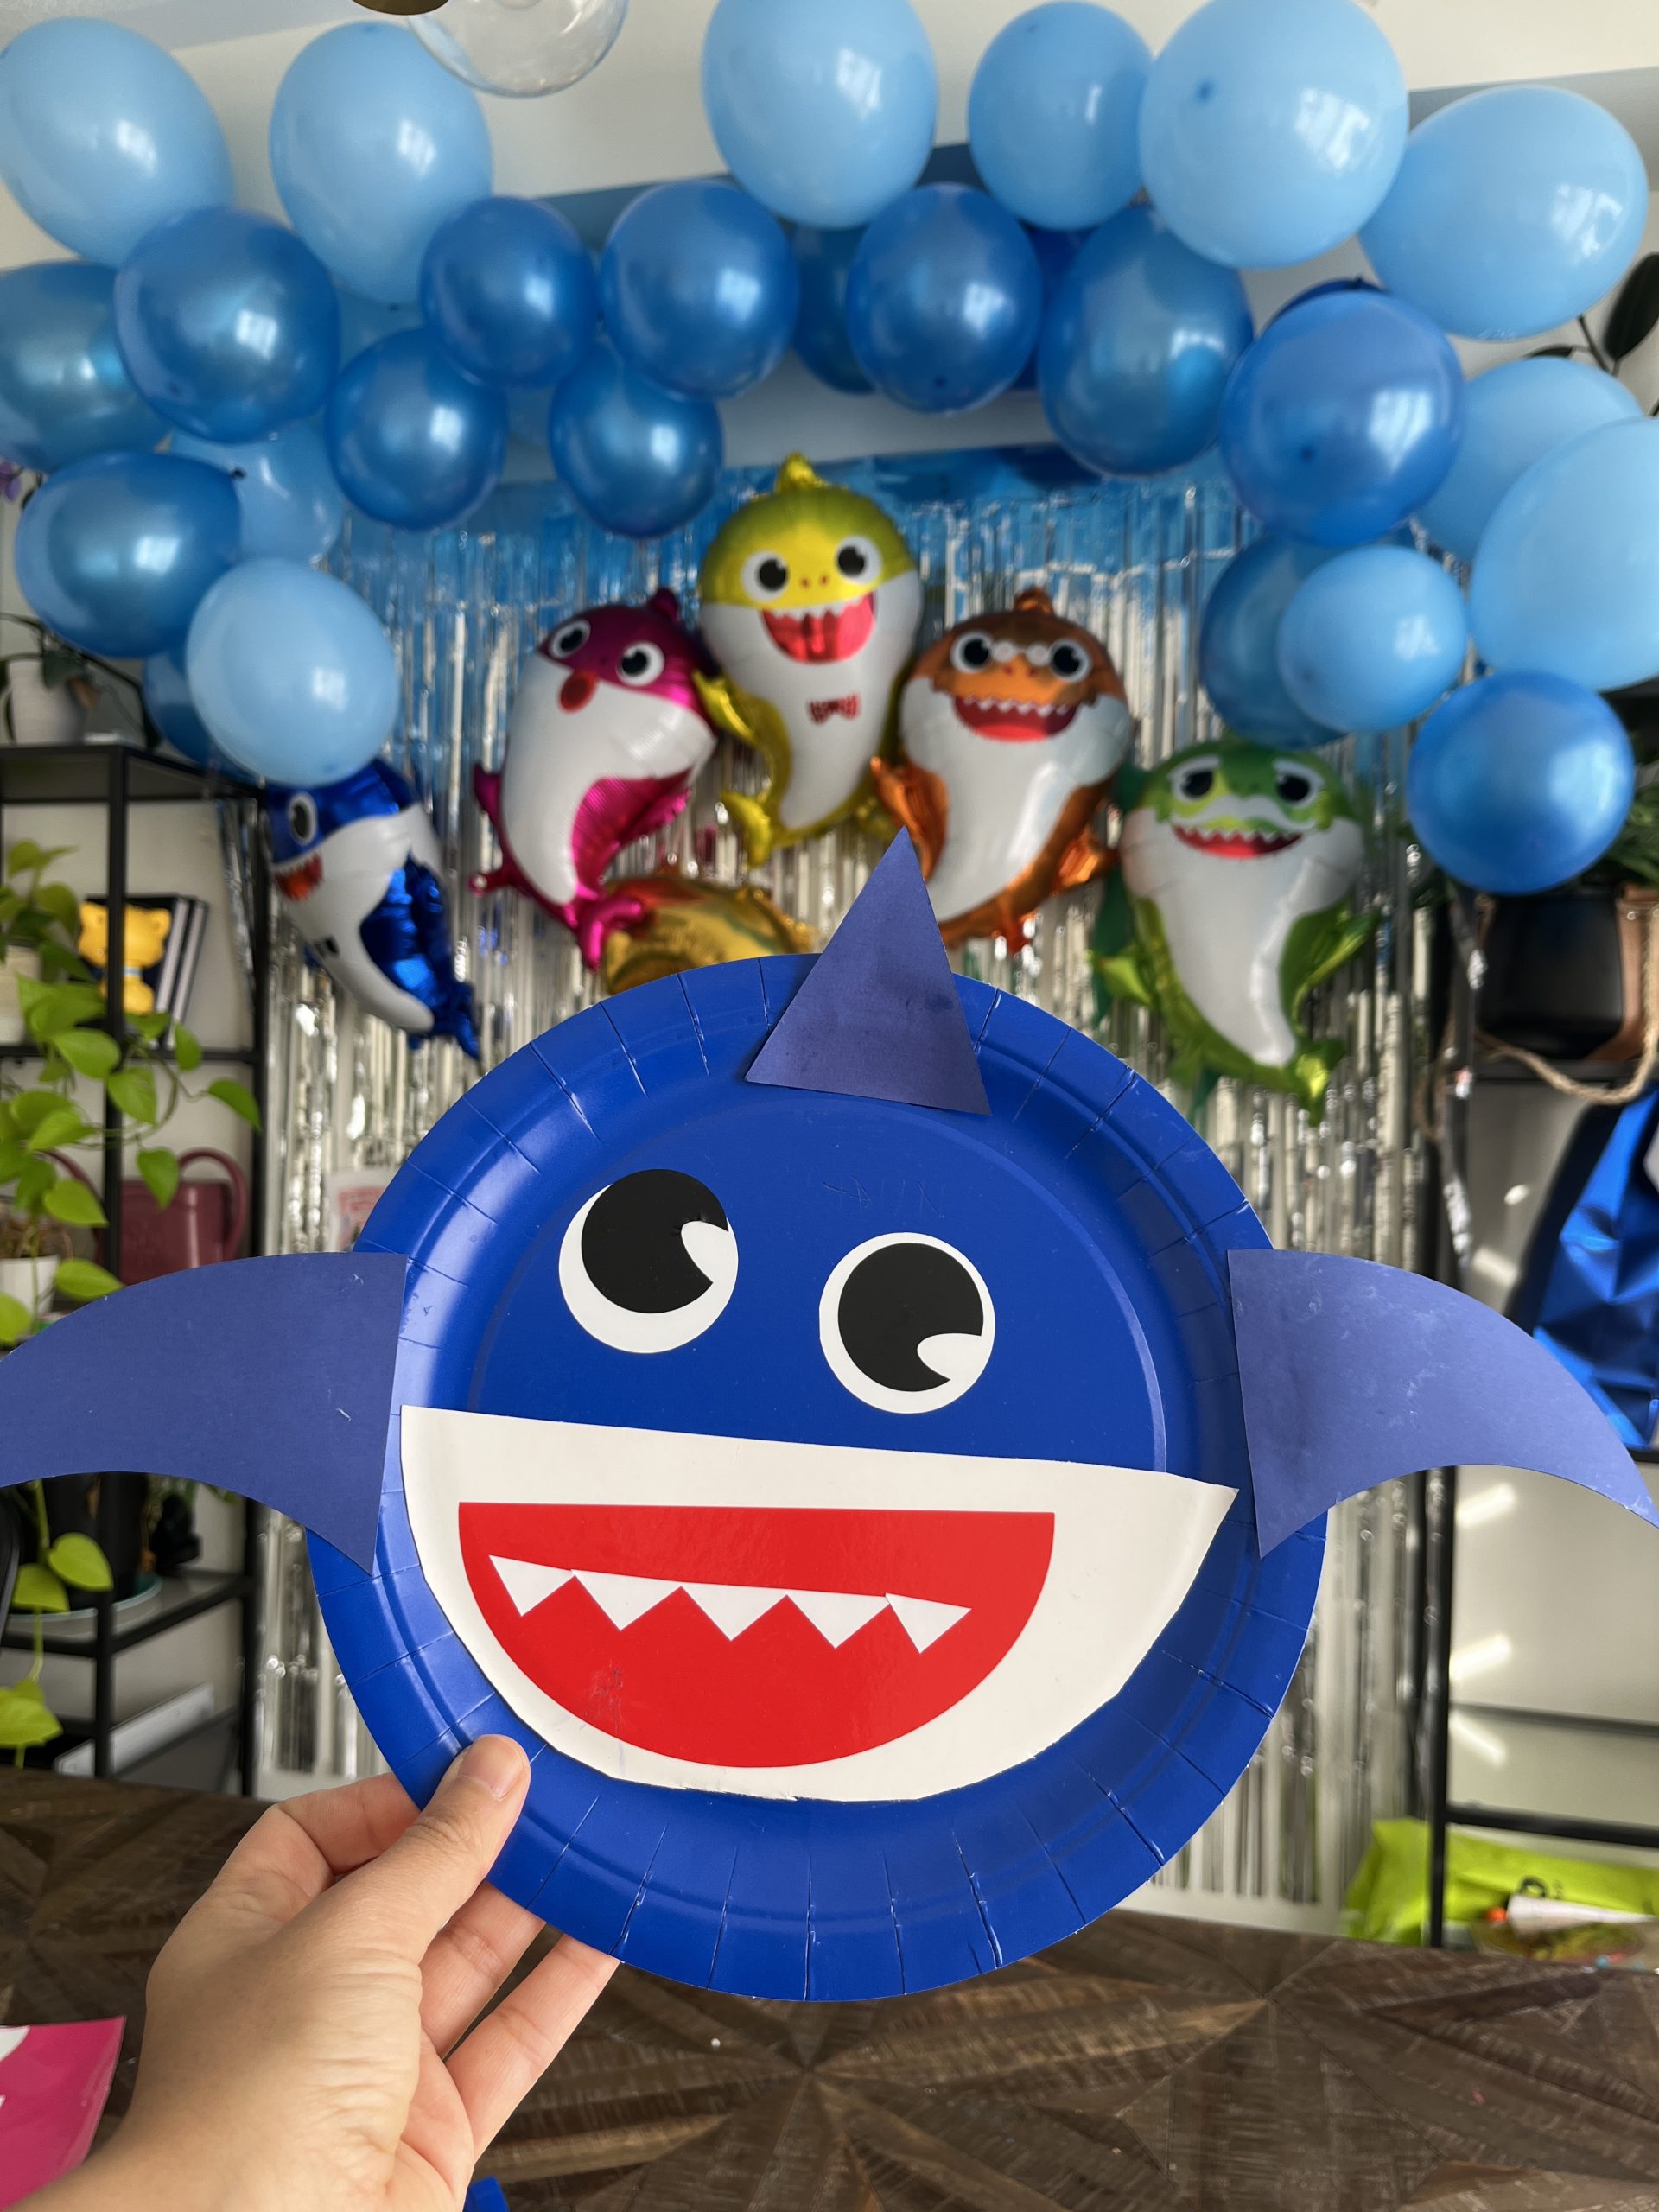 Baby Shark birthday party ideas - Hana's Happy Home